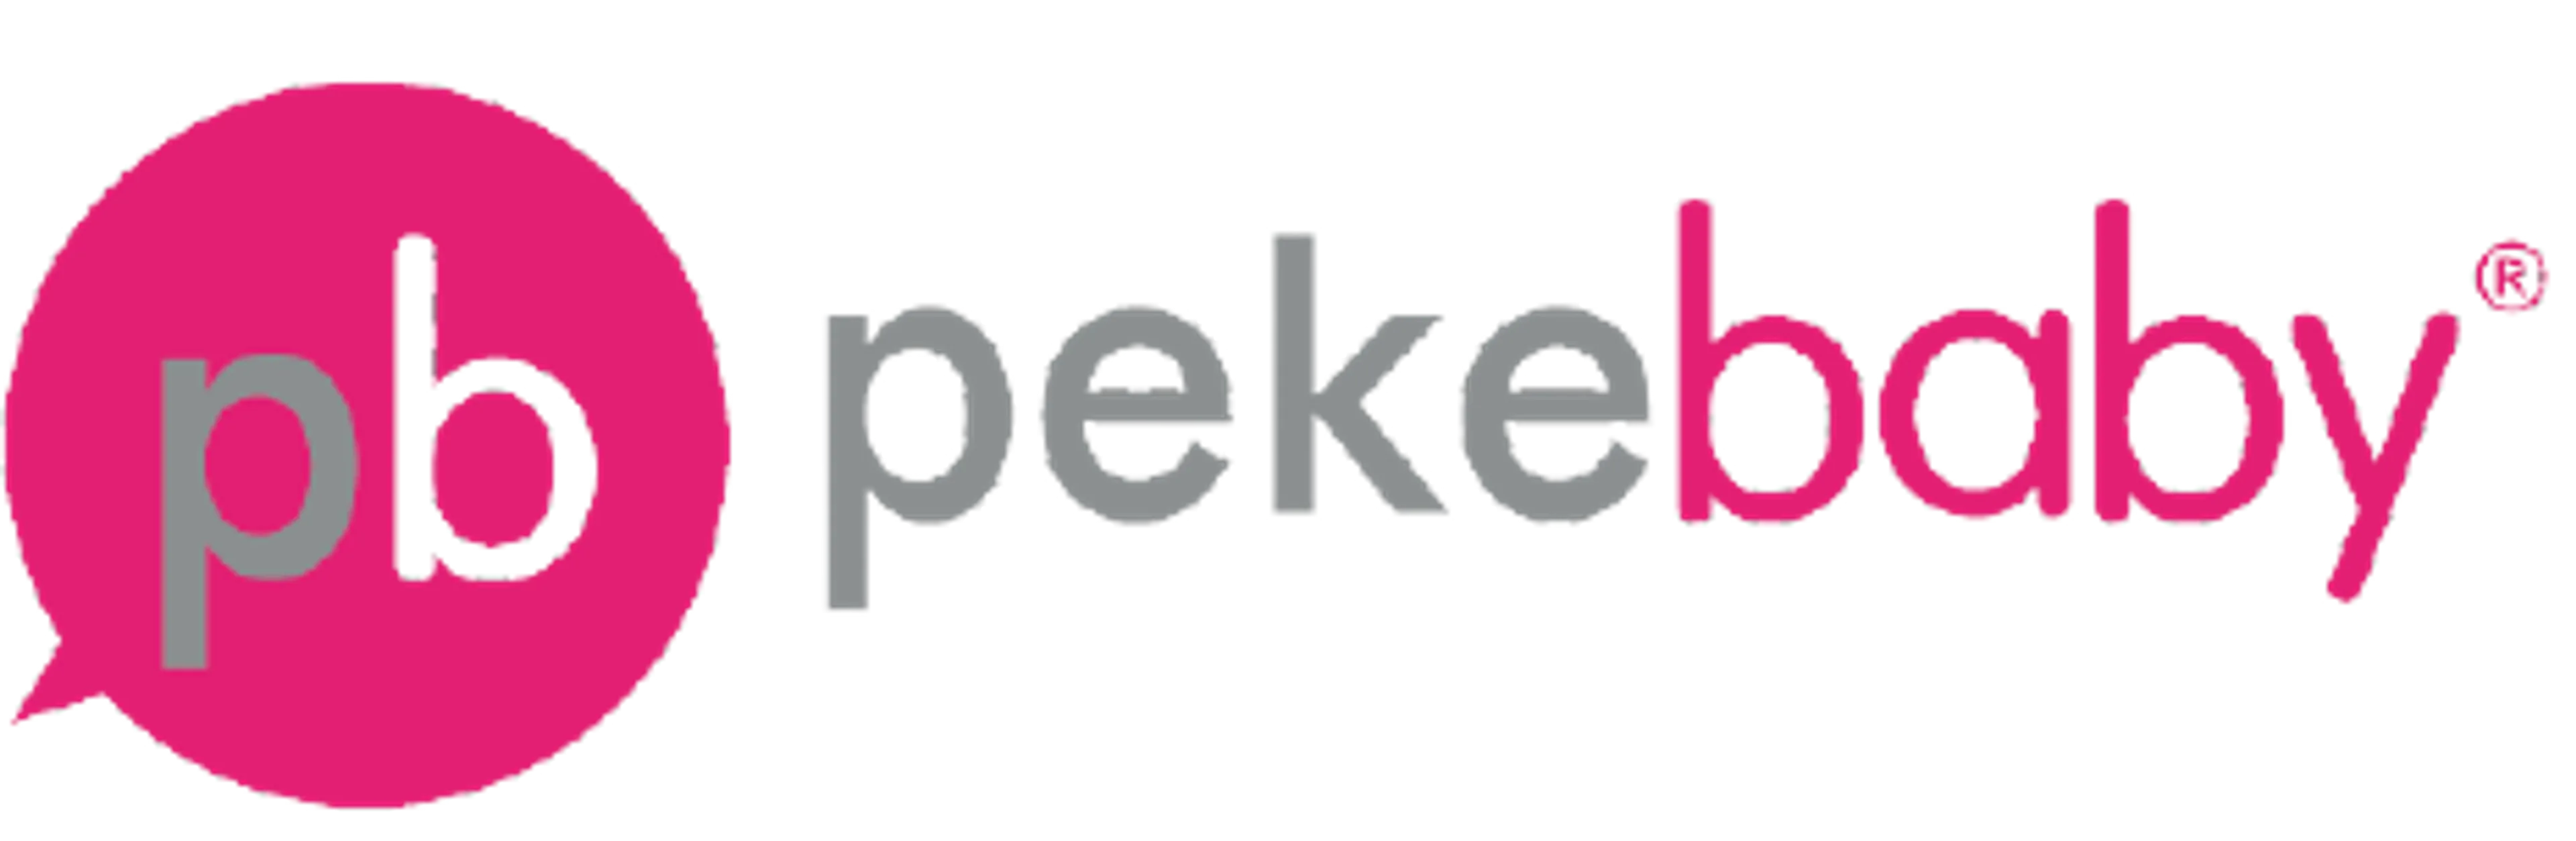 PEKEBABY logo